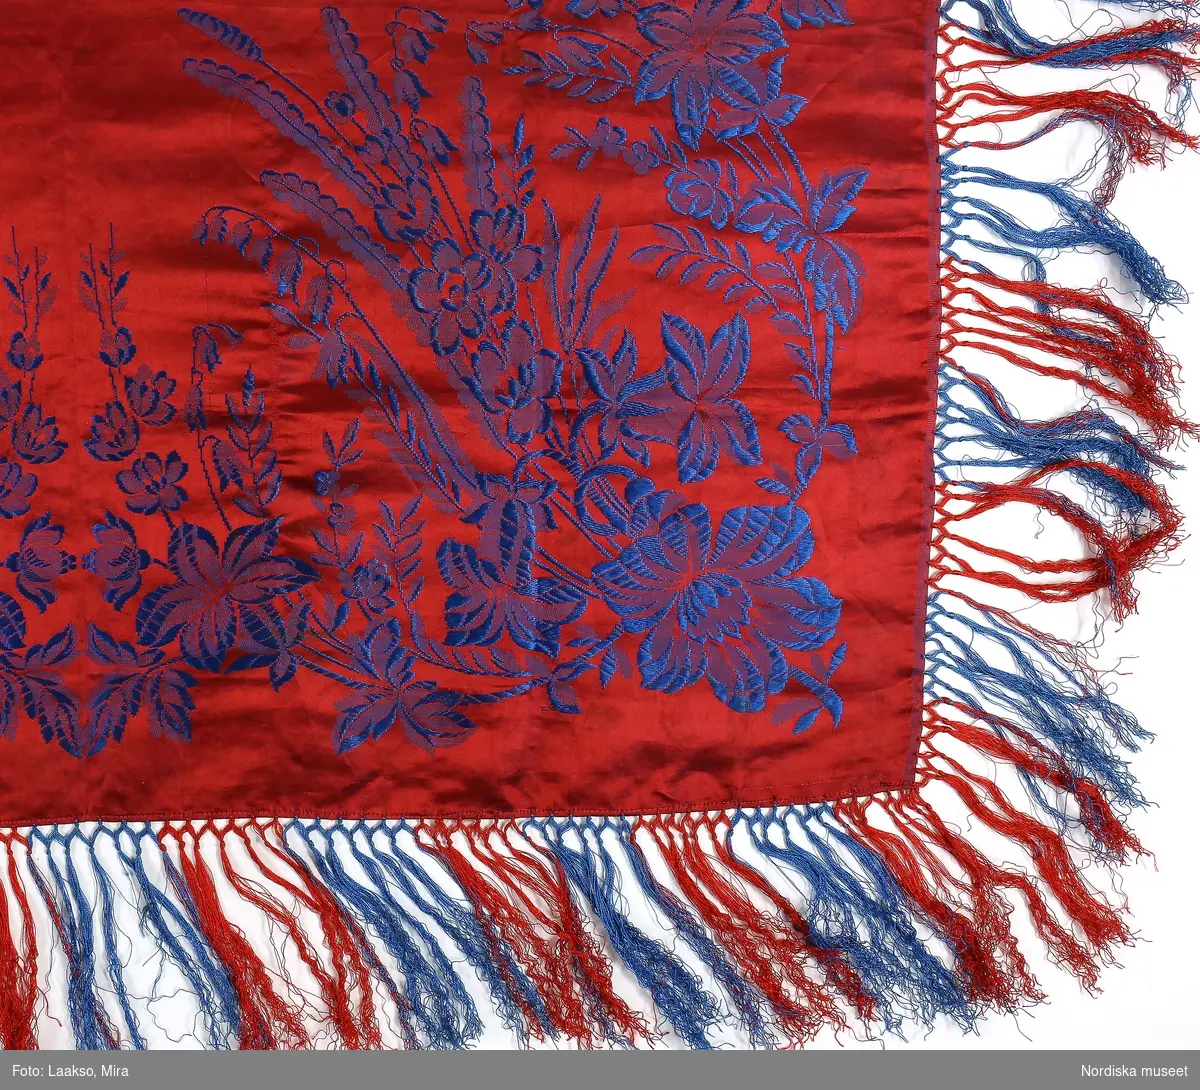 Kvadratiskt halskläde av sidensatin, röd botten med jacquardvävt blått blommönster, i hörnen buketter med långa stänglar med liljekonvaljer (?) och blåklockor, från buketten utgår slingor som möts på sidorna i smäckra blomstänglar , 2 maskinsydda fållar. Tvåknuten krusad  frans av tvinnat silke i omväxlande blått och rött. Mycket svag röd stämpel i ena hörnet med texten: Casparsson & Schmidt Stockholm.
Från Talma lappby. Vanligt bland samerna att ge silkekläden i friargåva. Denna  är en gåva från samen Johan Turi till konstnärinnan Emelie Demant Hatt som vistades och målade i sameland. Tavlor av henne finns i Nordiska museets samlingar.
I nyskick , troligen inte använd. Samma mönster finns från andra håll i landet. Casparsson & Schmidt var tillsammans med K.A.-Almgrens sidenväveri de enda svenska sidenväverierna i slutet av 1800-talet och deras dukar såldes över hela landet. C&S upphörde 1904.